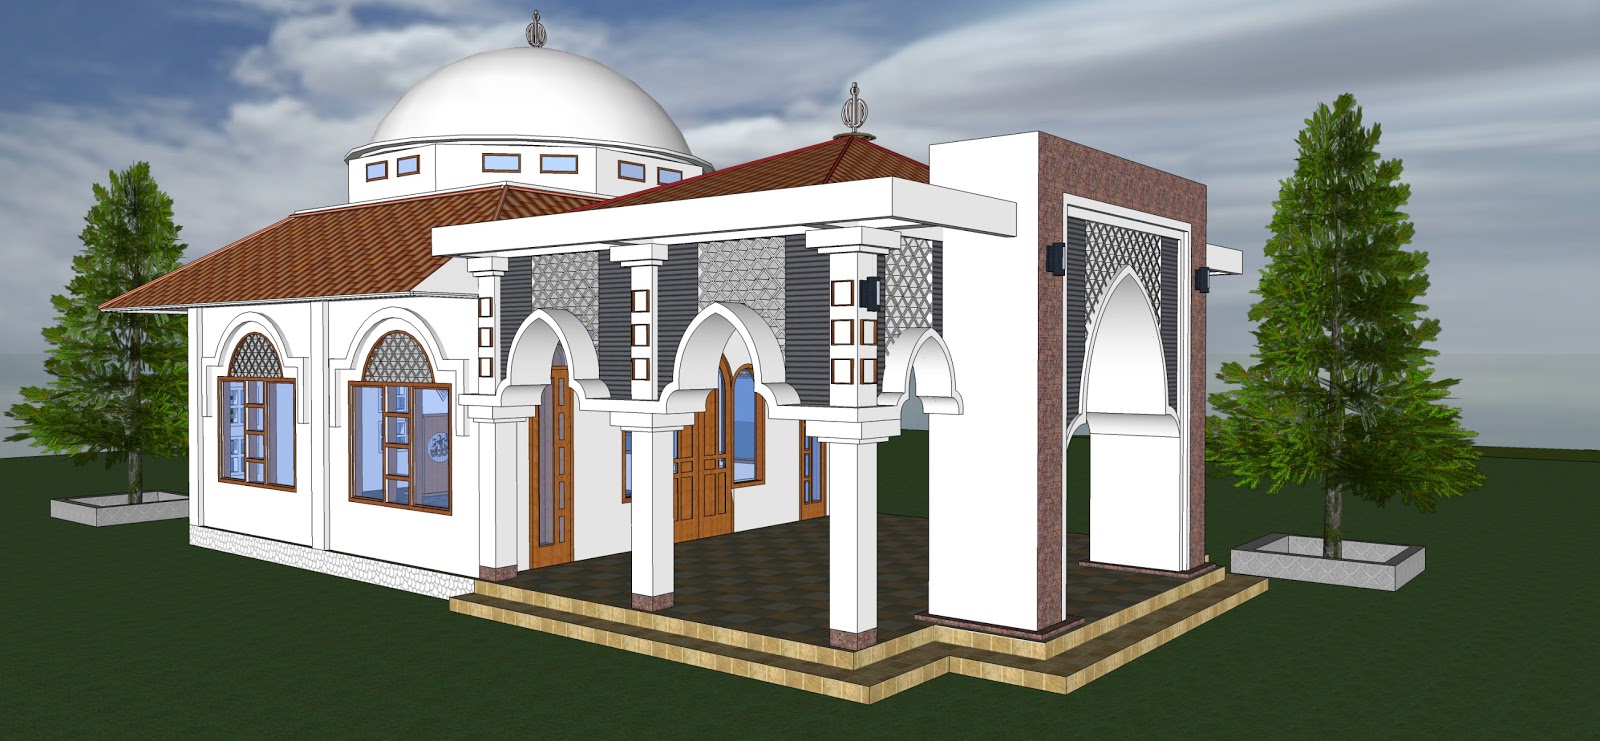 Omah koe Desain Masjid 